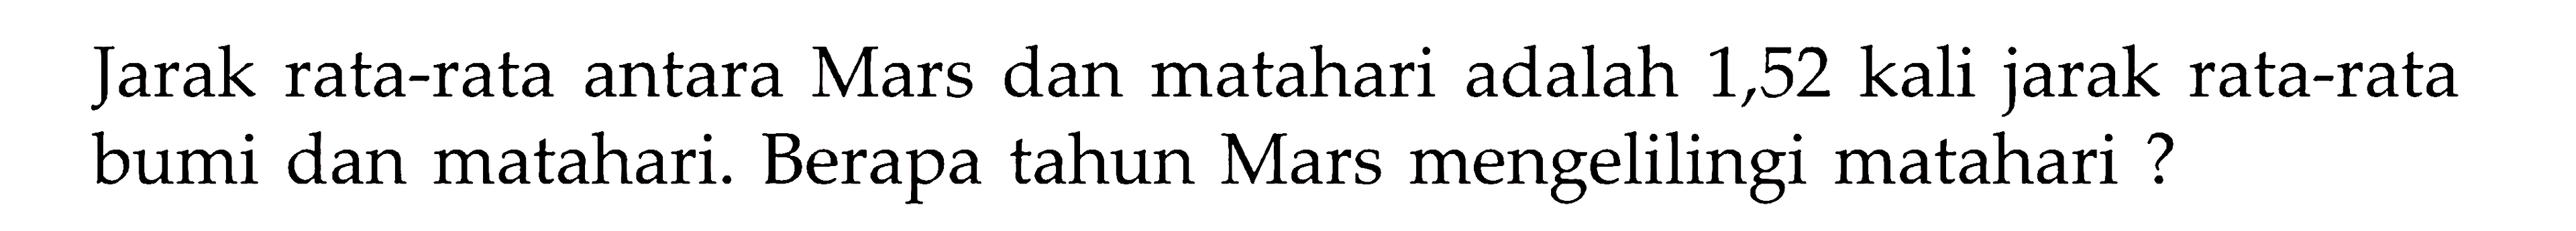 Jarak rata-rata antara Mars dan matahari adalah 1,52 kali jarak rata-rata bumi dan matahari. Berapa tahun Mars mengelilingi matahari ?